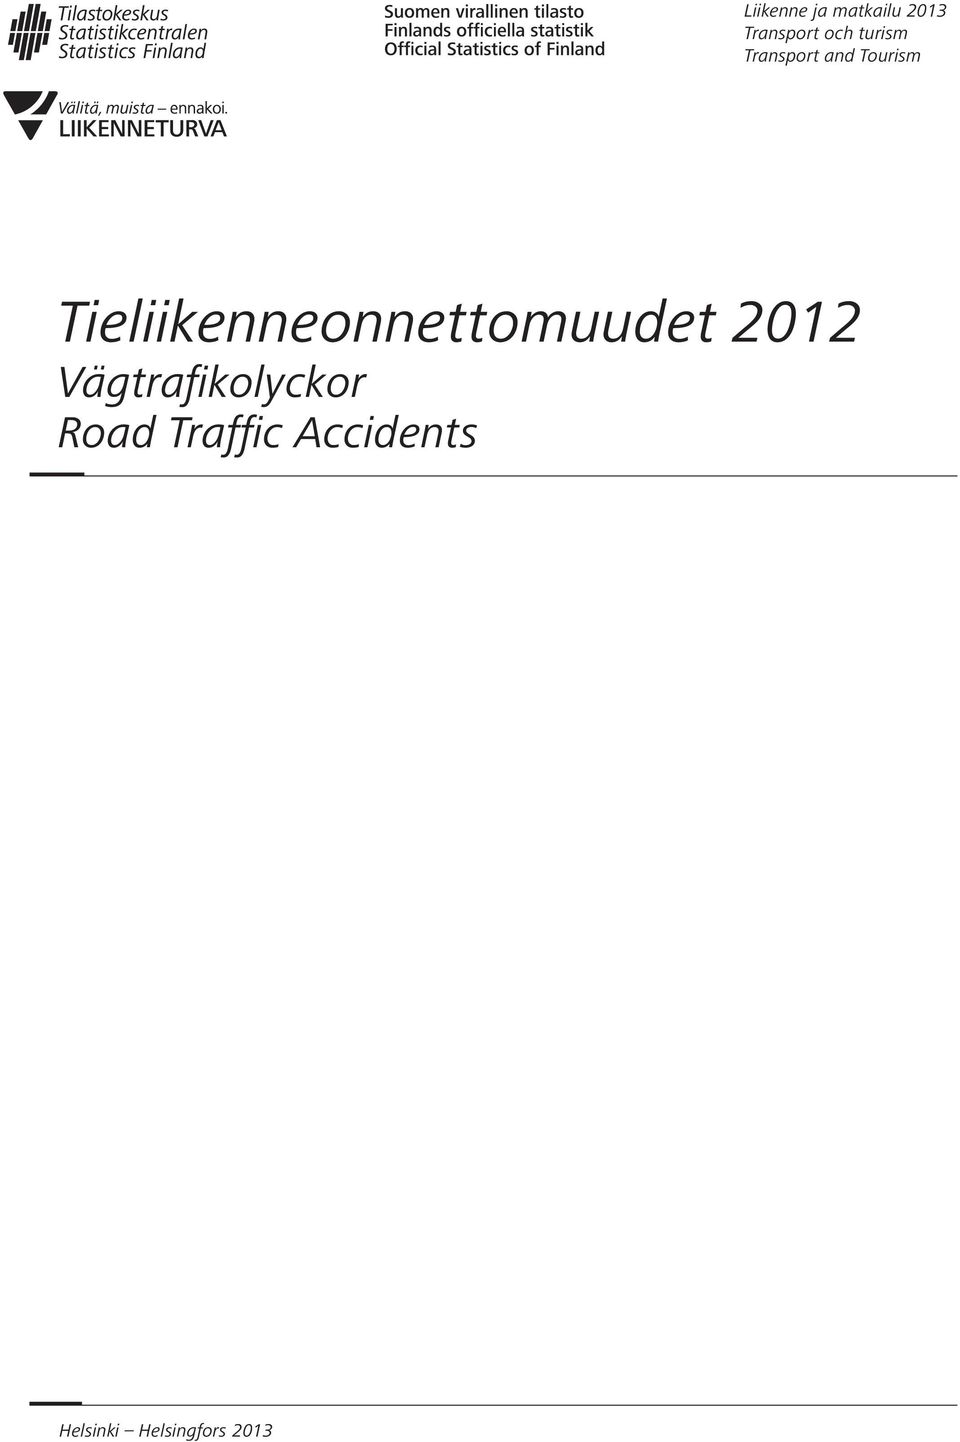 Tieliikenneonnettomuudet 2012